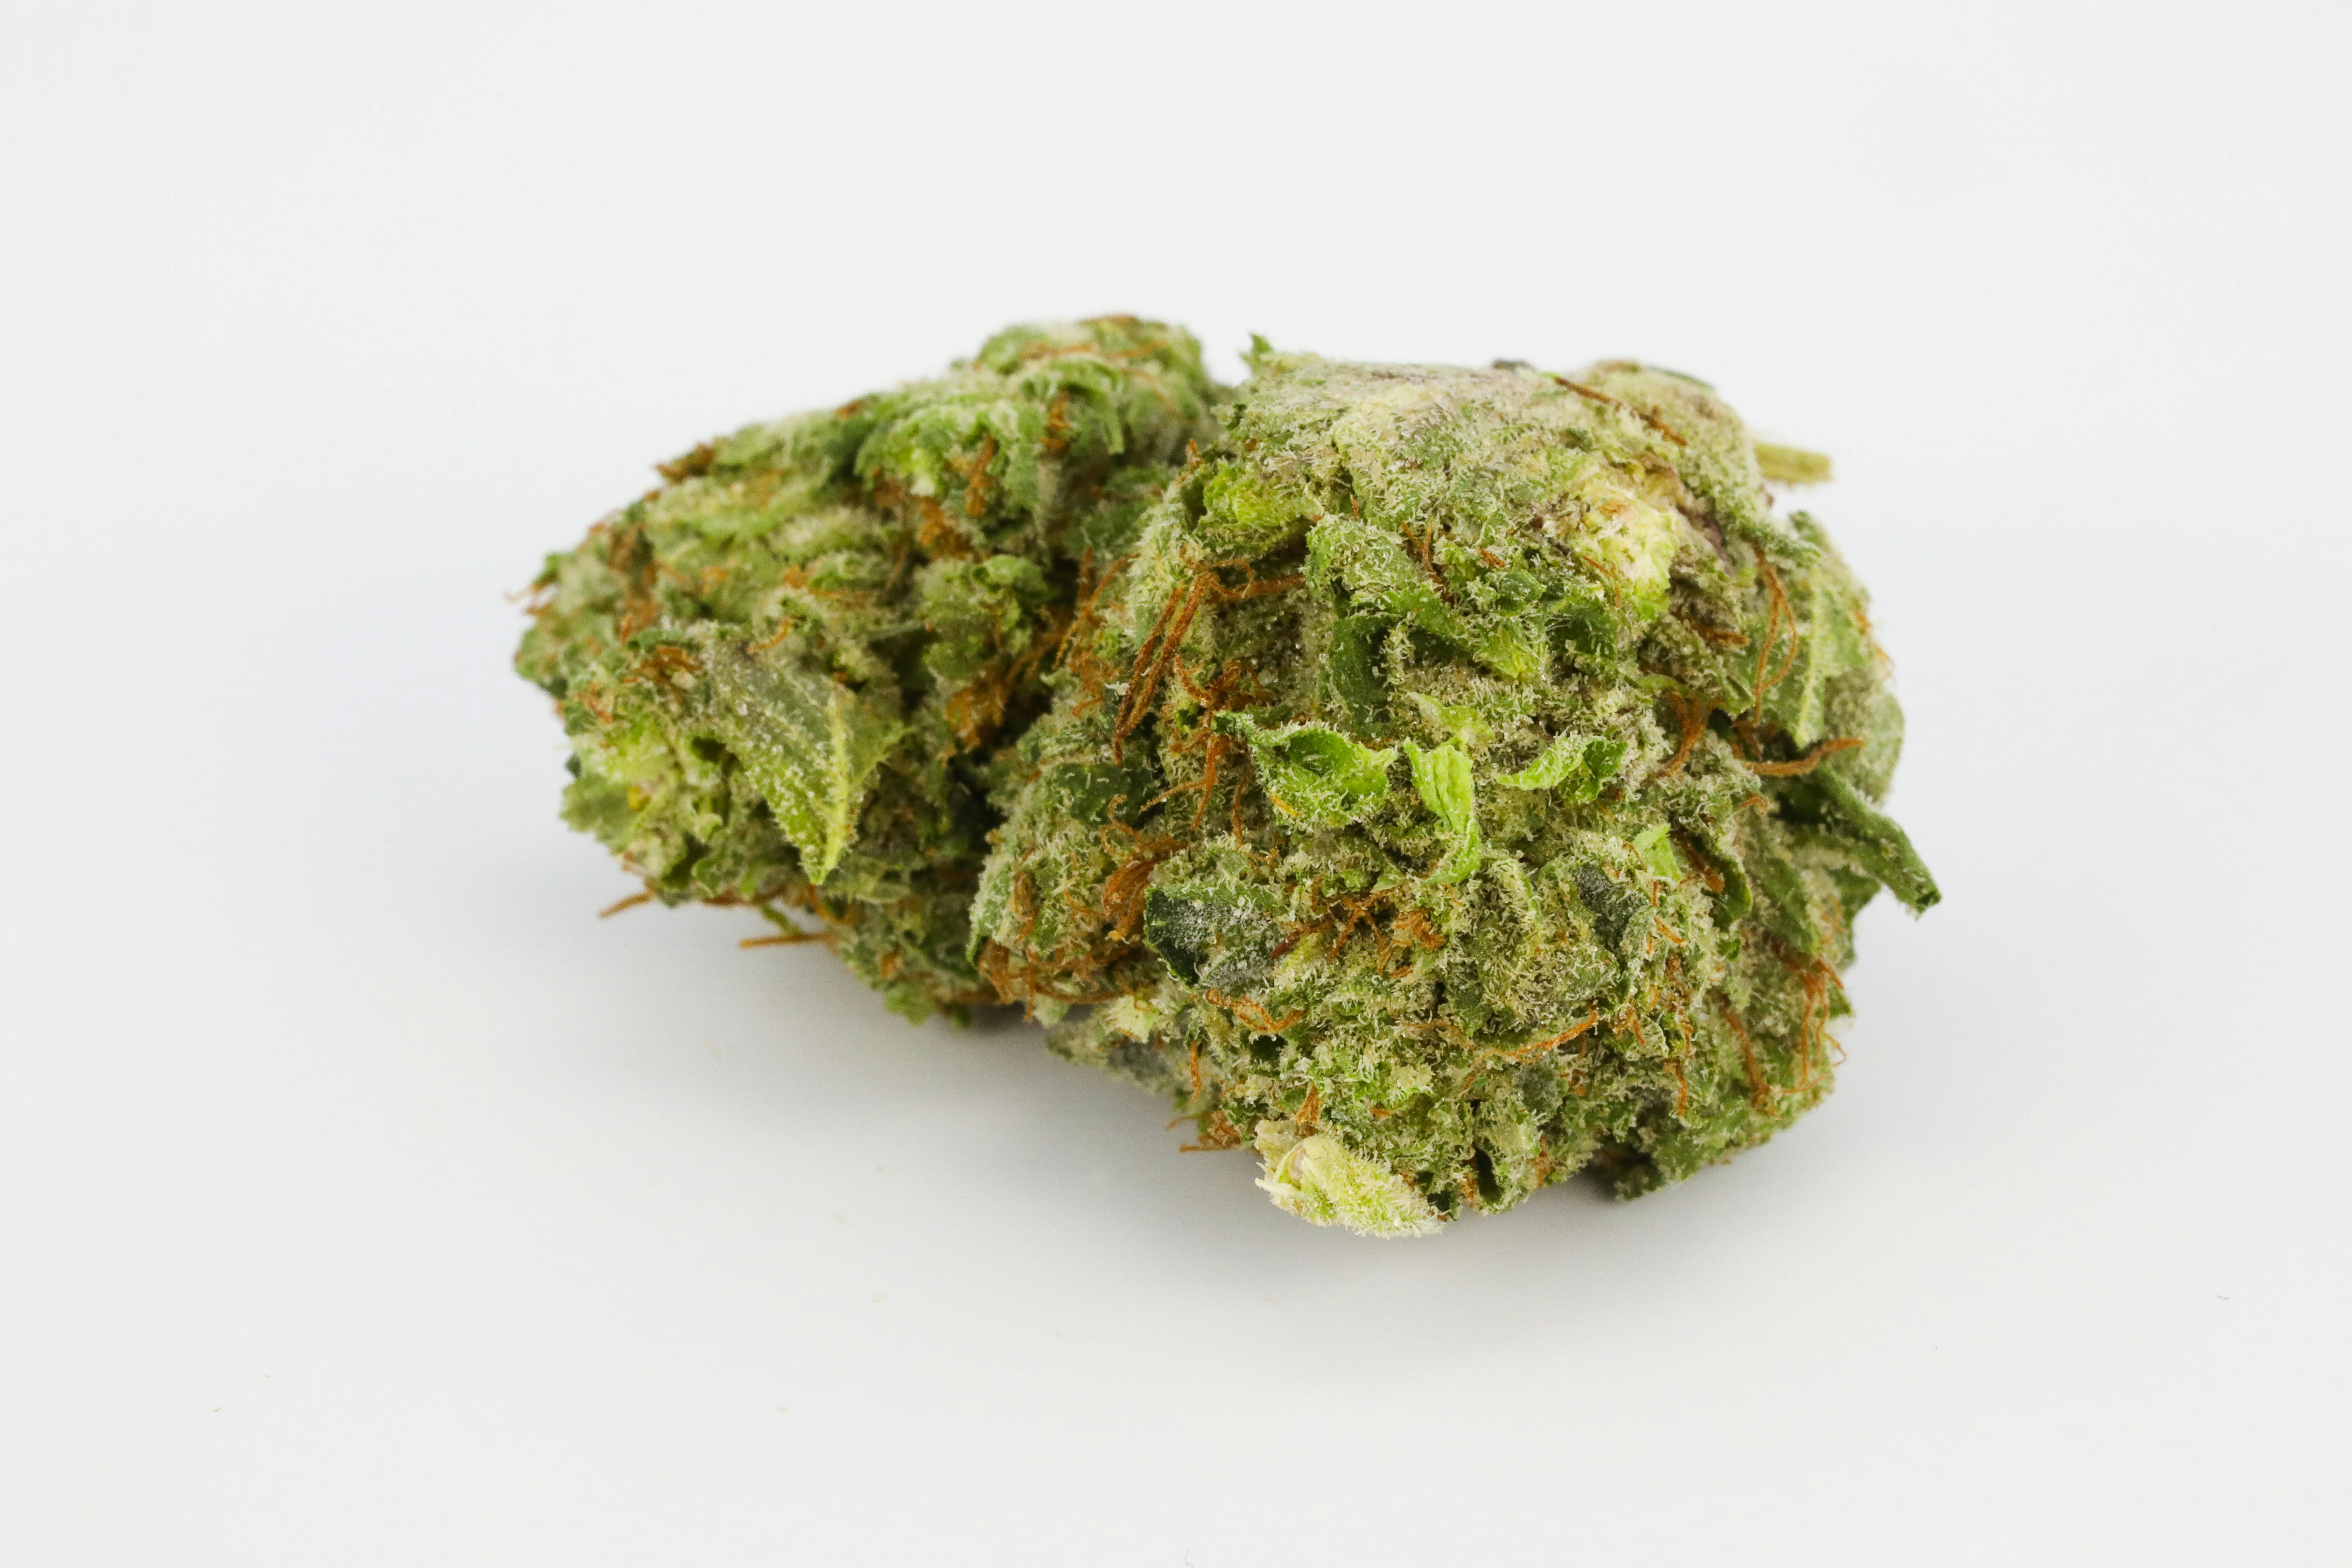 0G8A3214: Todo lo que necesitas saber sobre las variedades de cannabis Landrace